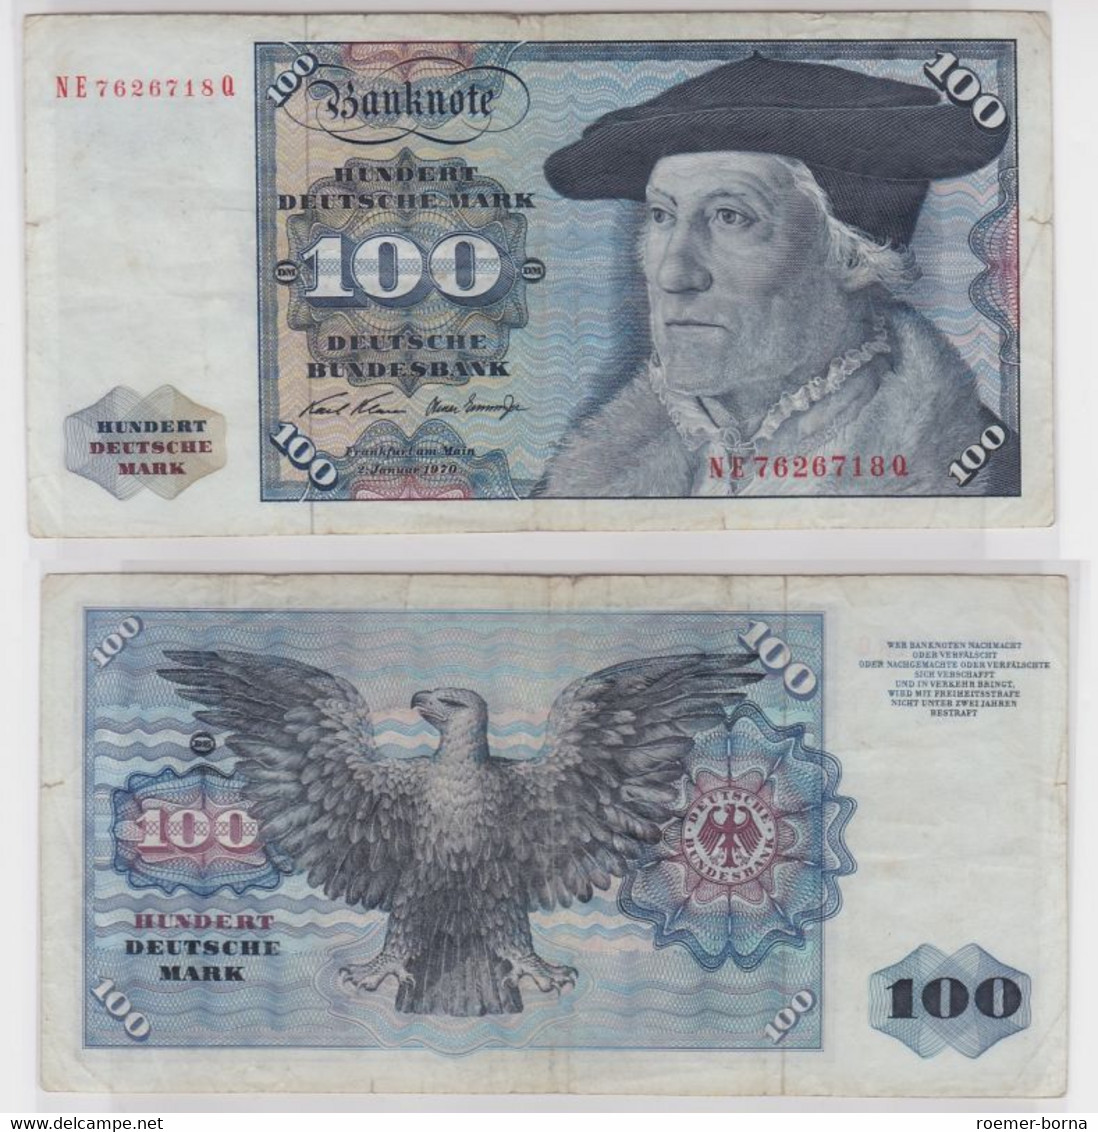 T147133 Banknote 100 DM Deutsche Mark Ro. 273b Schein 2.Jan 1970 KN NE 7626718 Q - 100 DM